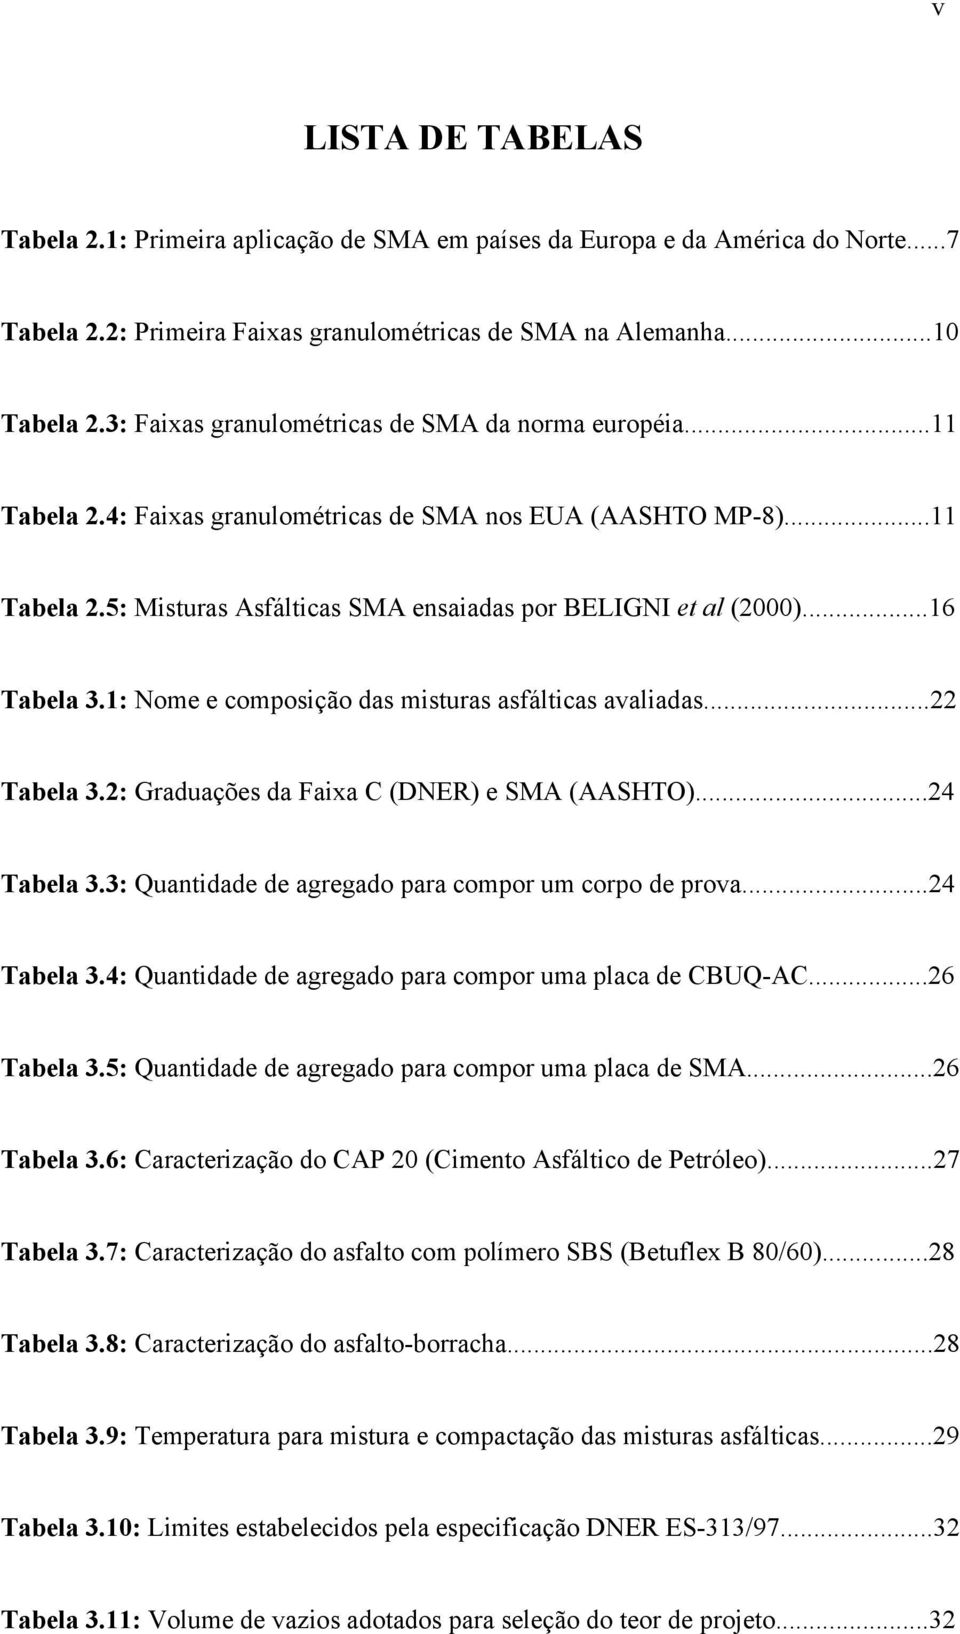 ..16 Tabela 3.1: Nome e composição das misturas asfálticas avaliadas...22 Tabela 3.2: Graduações da Faixa C (DNER) e SMA (AASHTO)...24 Tabela 3.3: Quantidade de agregado para compor um corpo de prova.